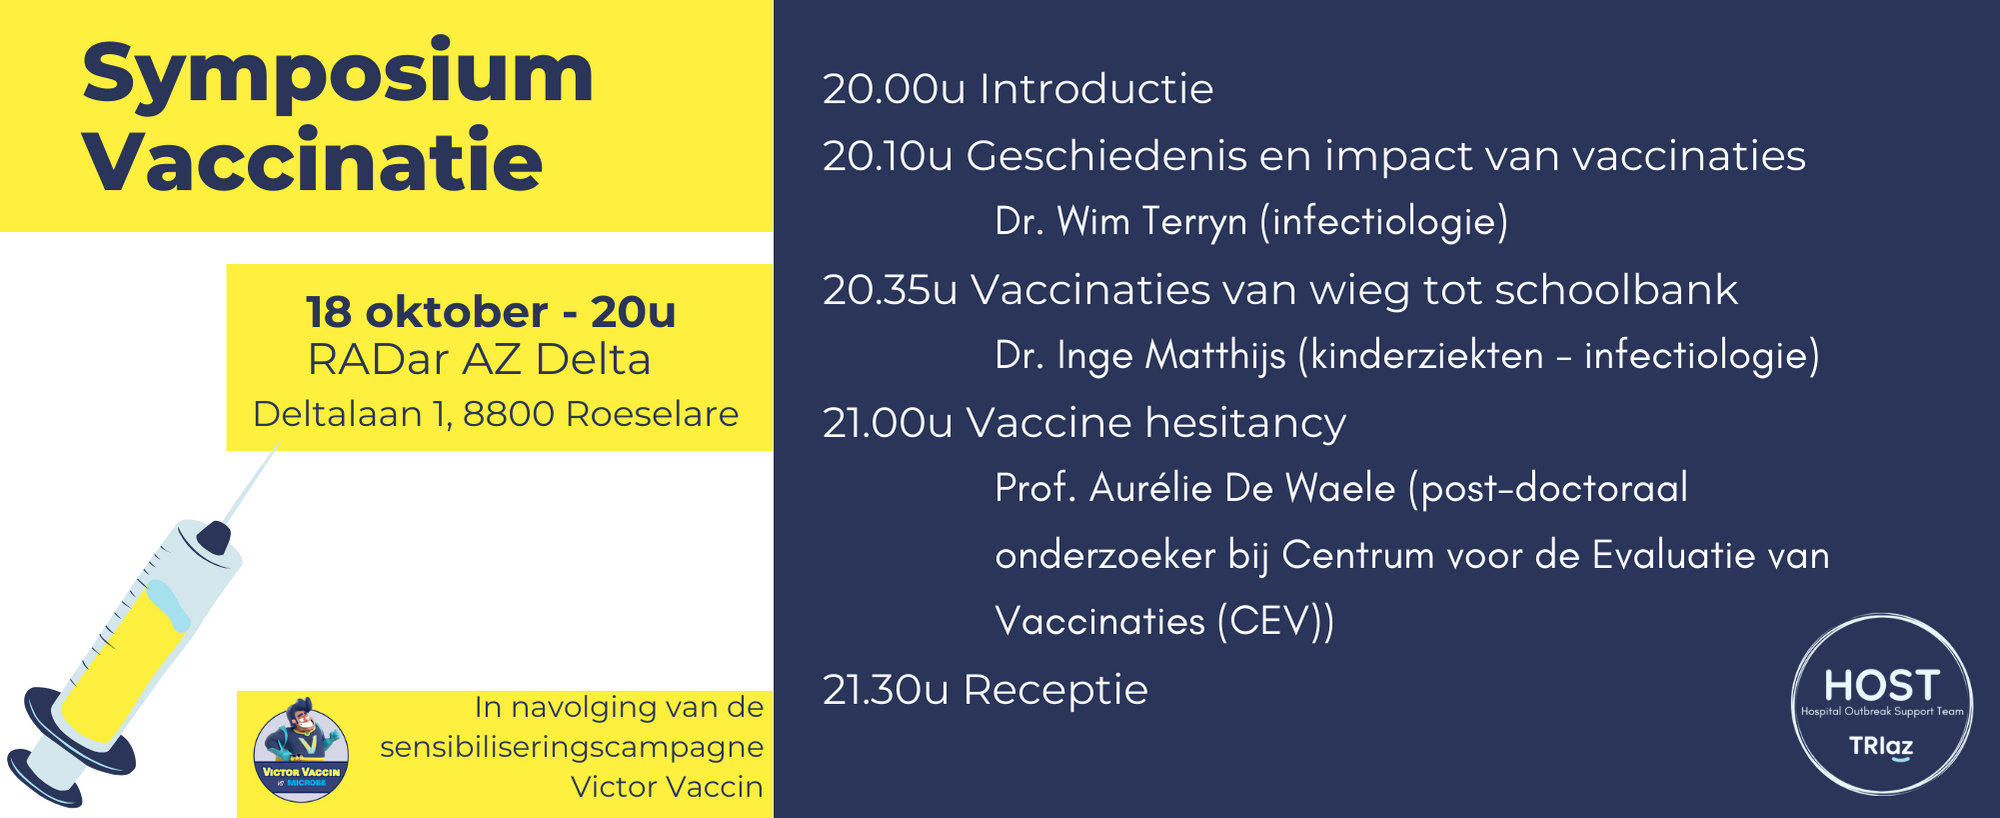 Symposium vaccinatie